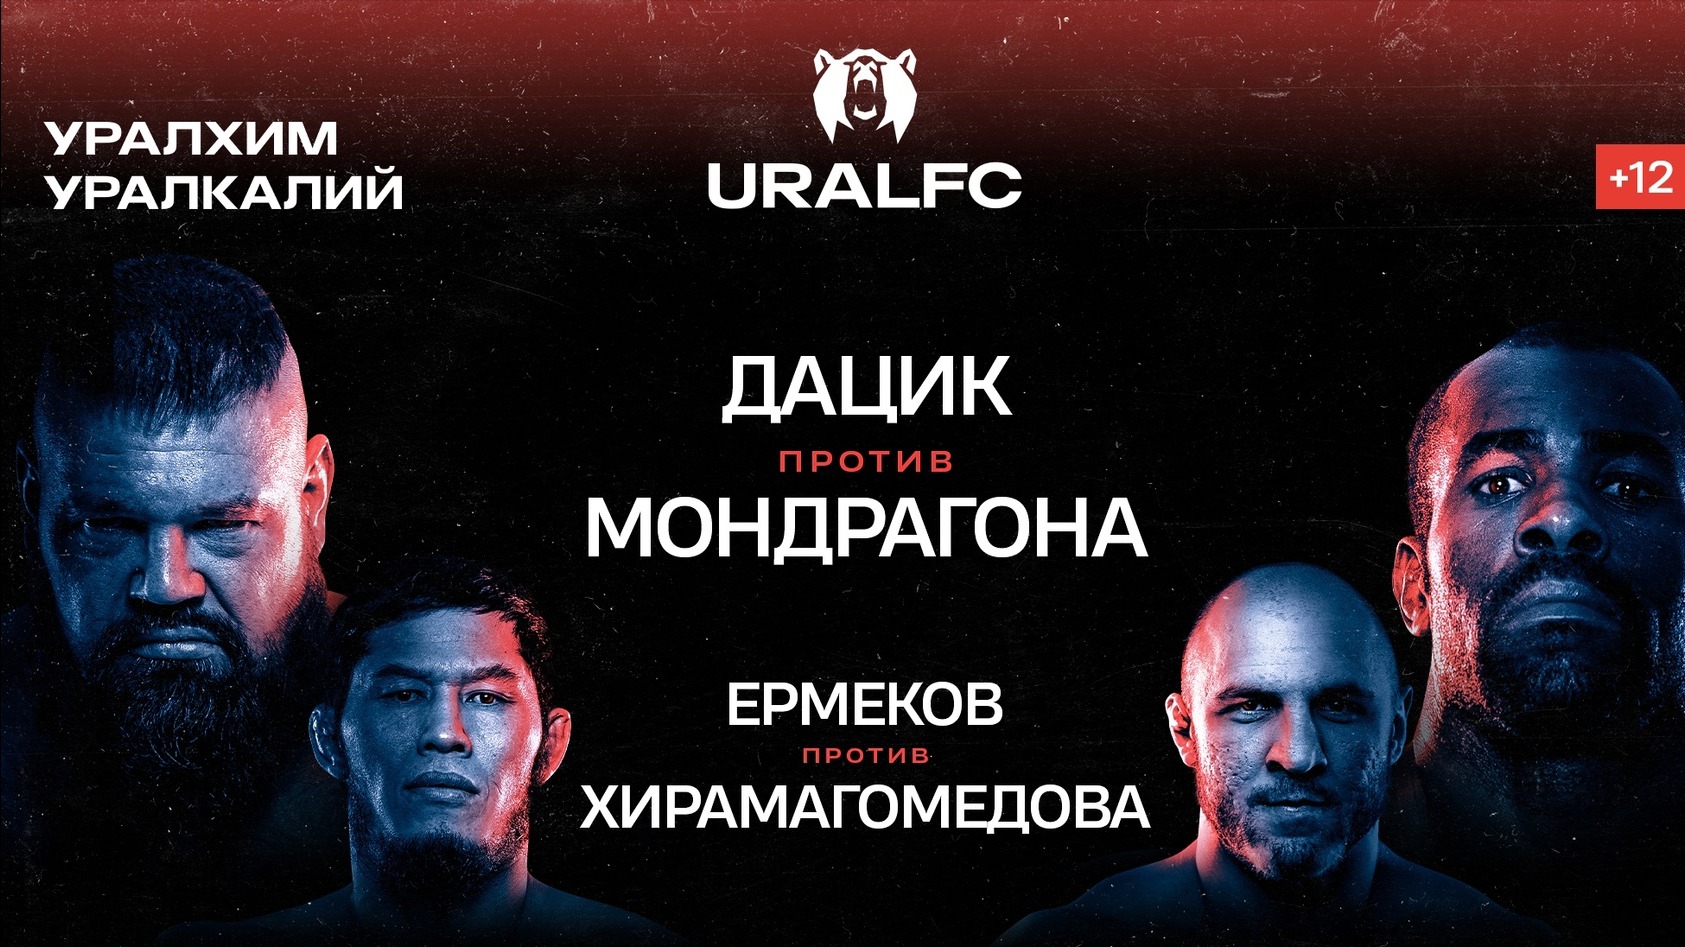 Стал известен полный кард Ural FC 2: Дацик – Мондрагон, Ермеков – Хирамагомедов